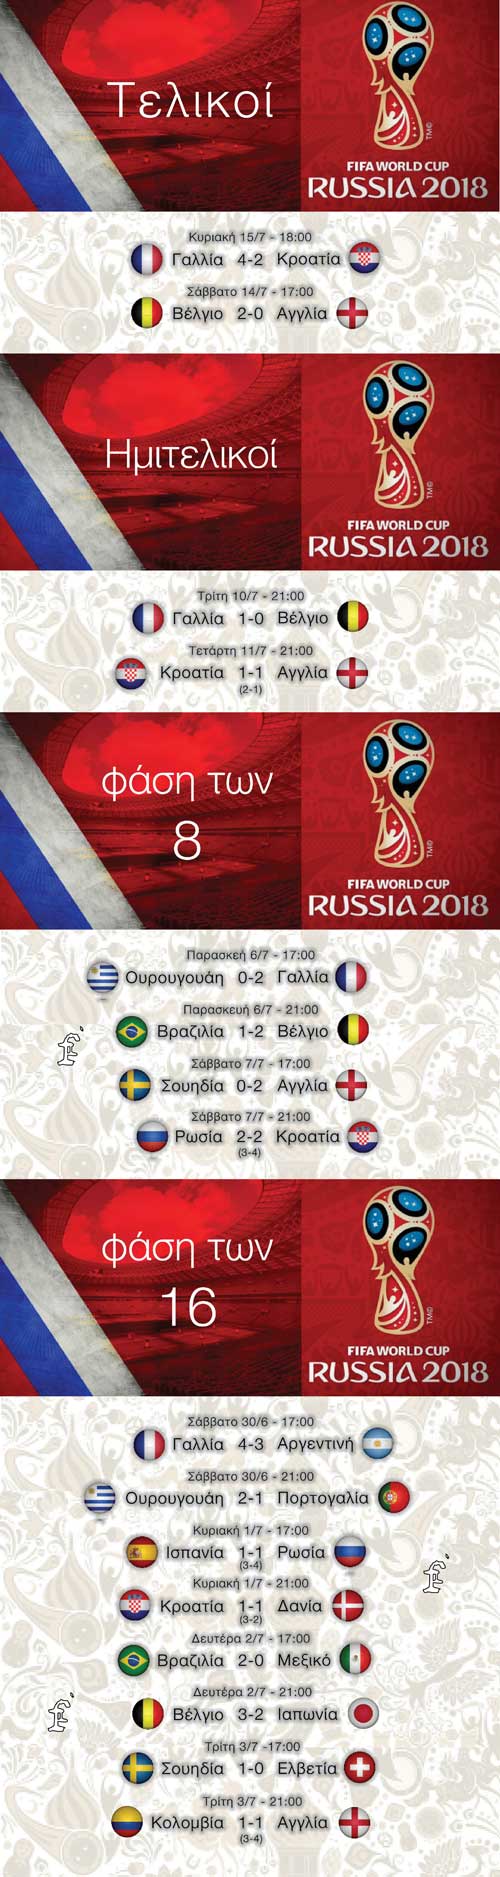 russia2018-final-small